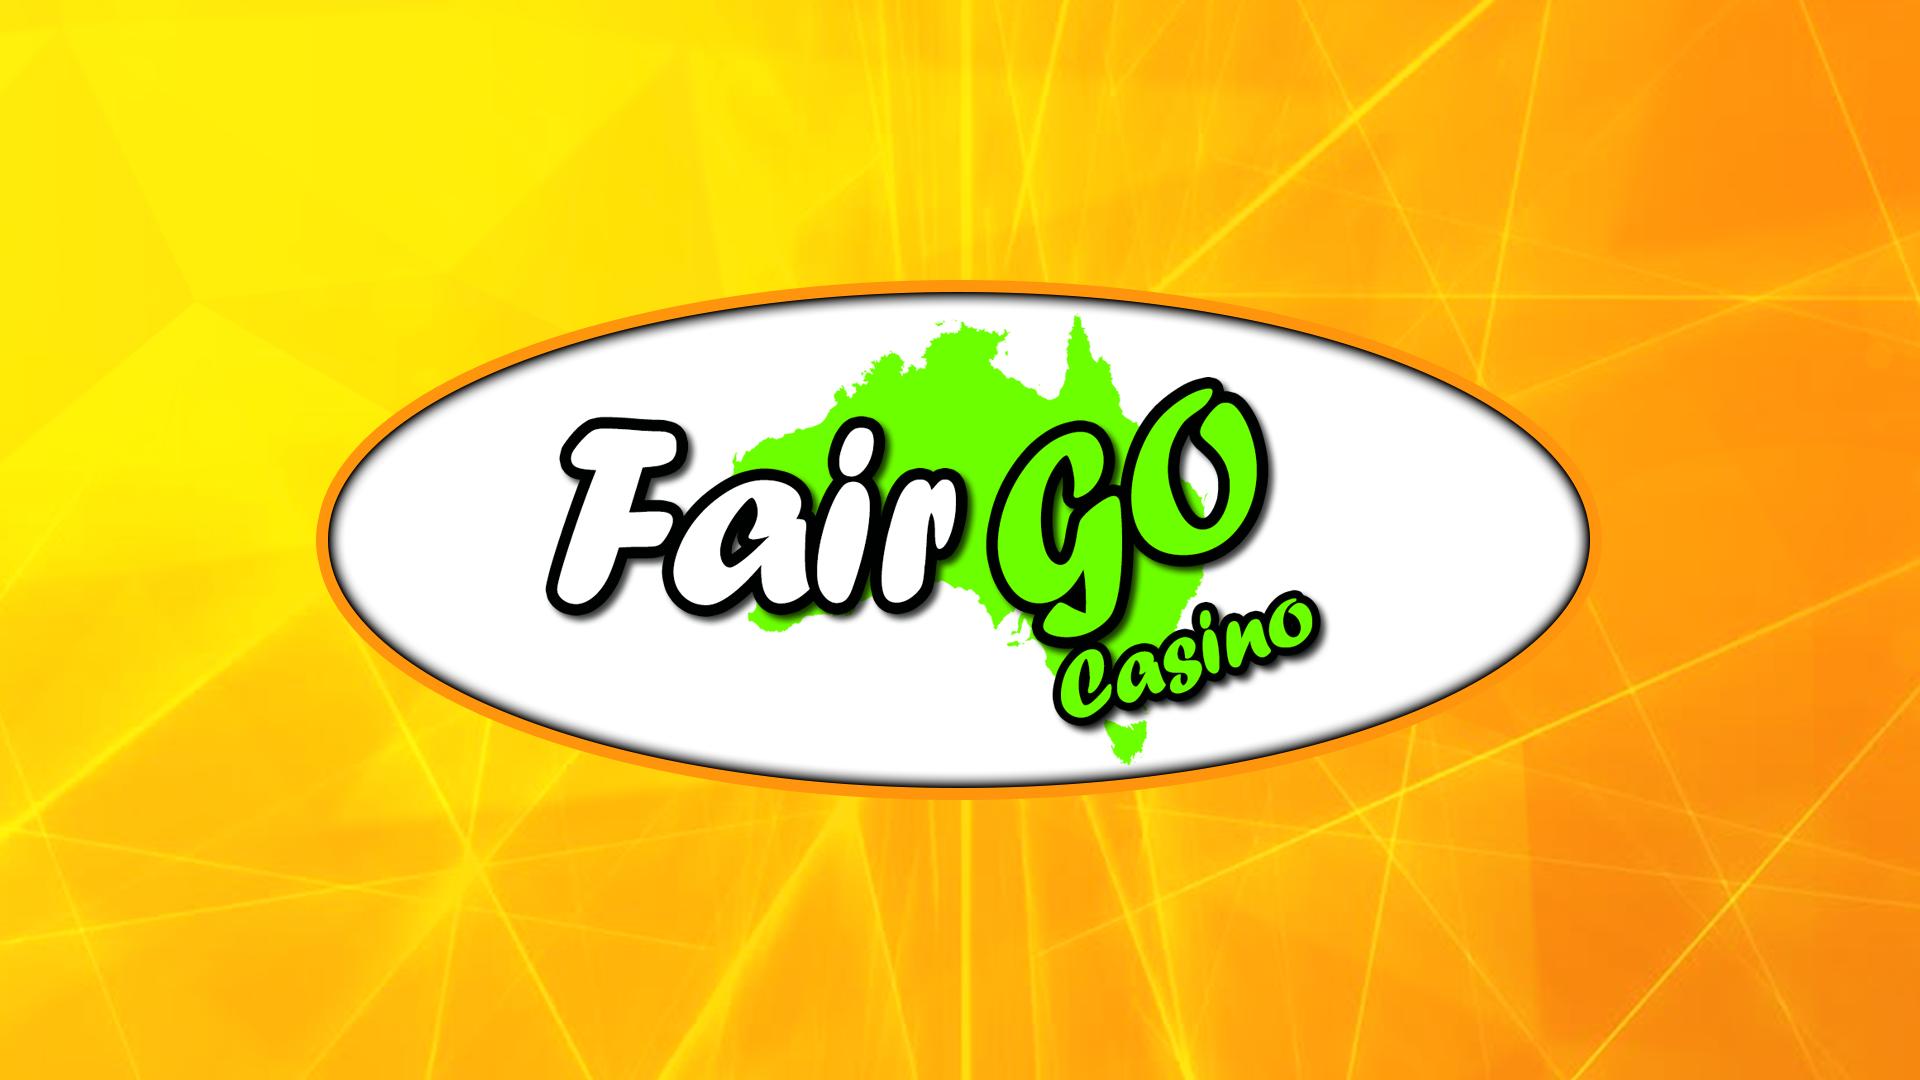 Fair go casino app download